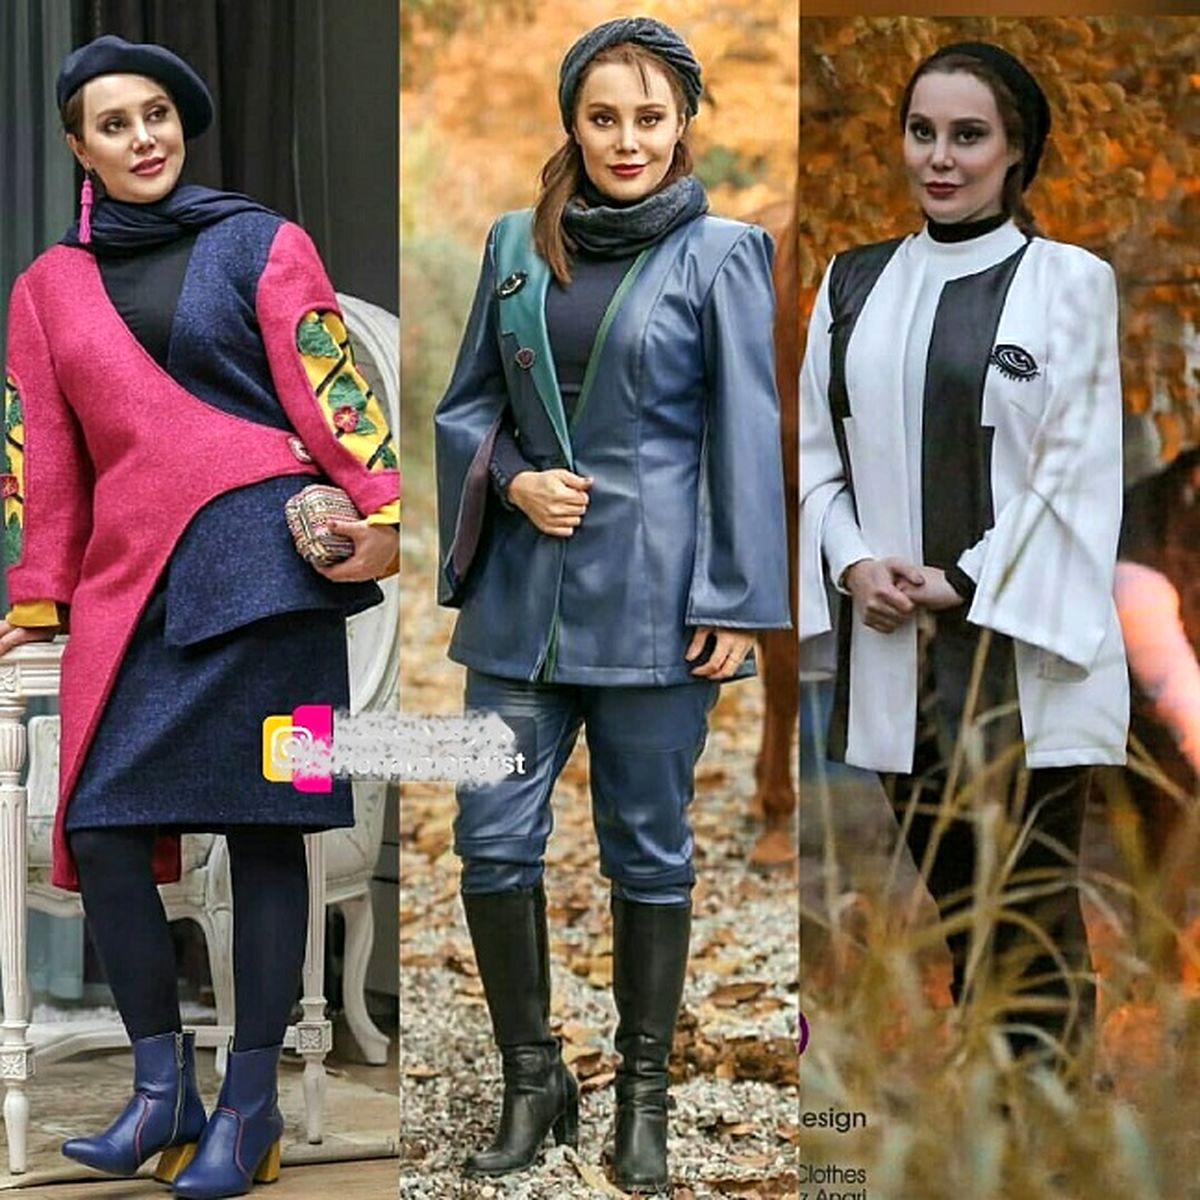 تصاویر جنجالی از تیپ مدلینگ بازیگر زن ایرانی لو رفت + عکس های دیده نشده